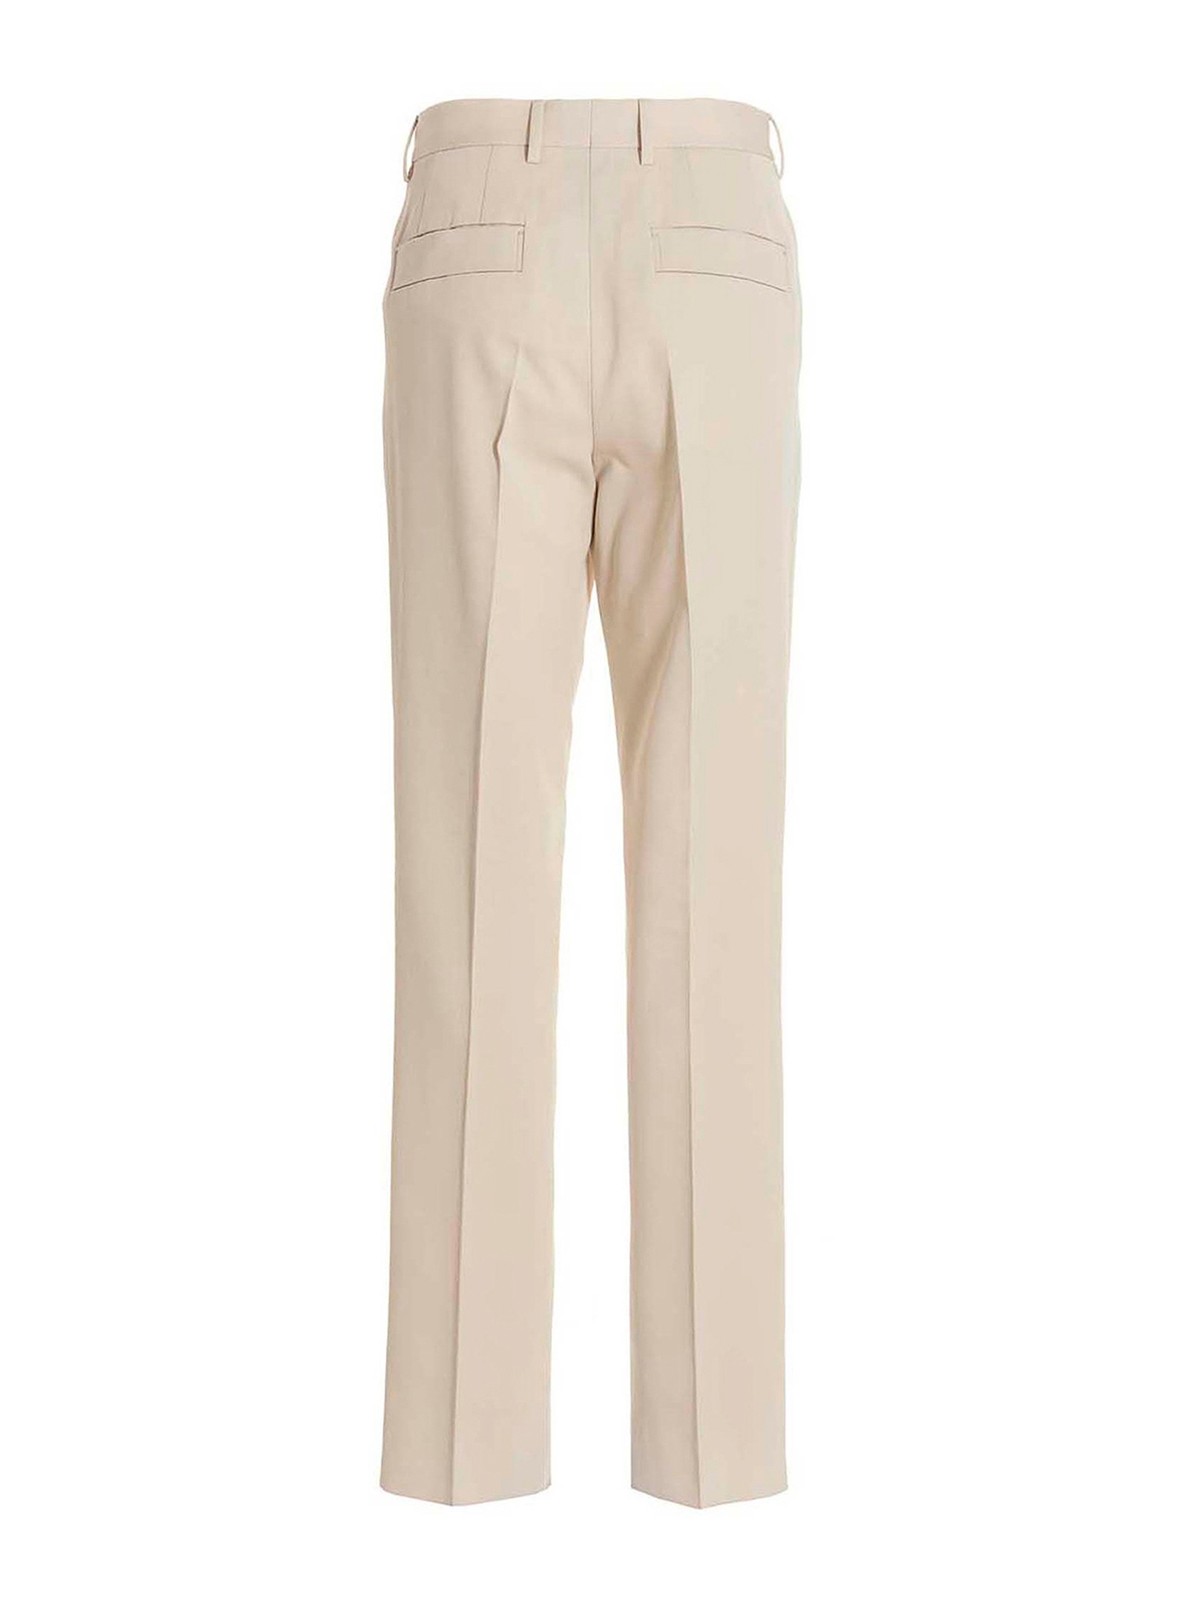 Buy Men's Solid Full Length Formal Trousers Online | Centrepoint KSA